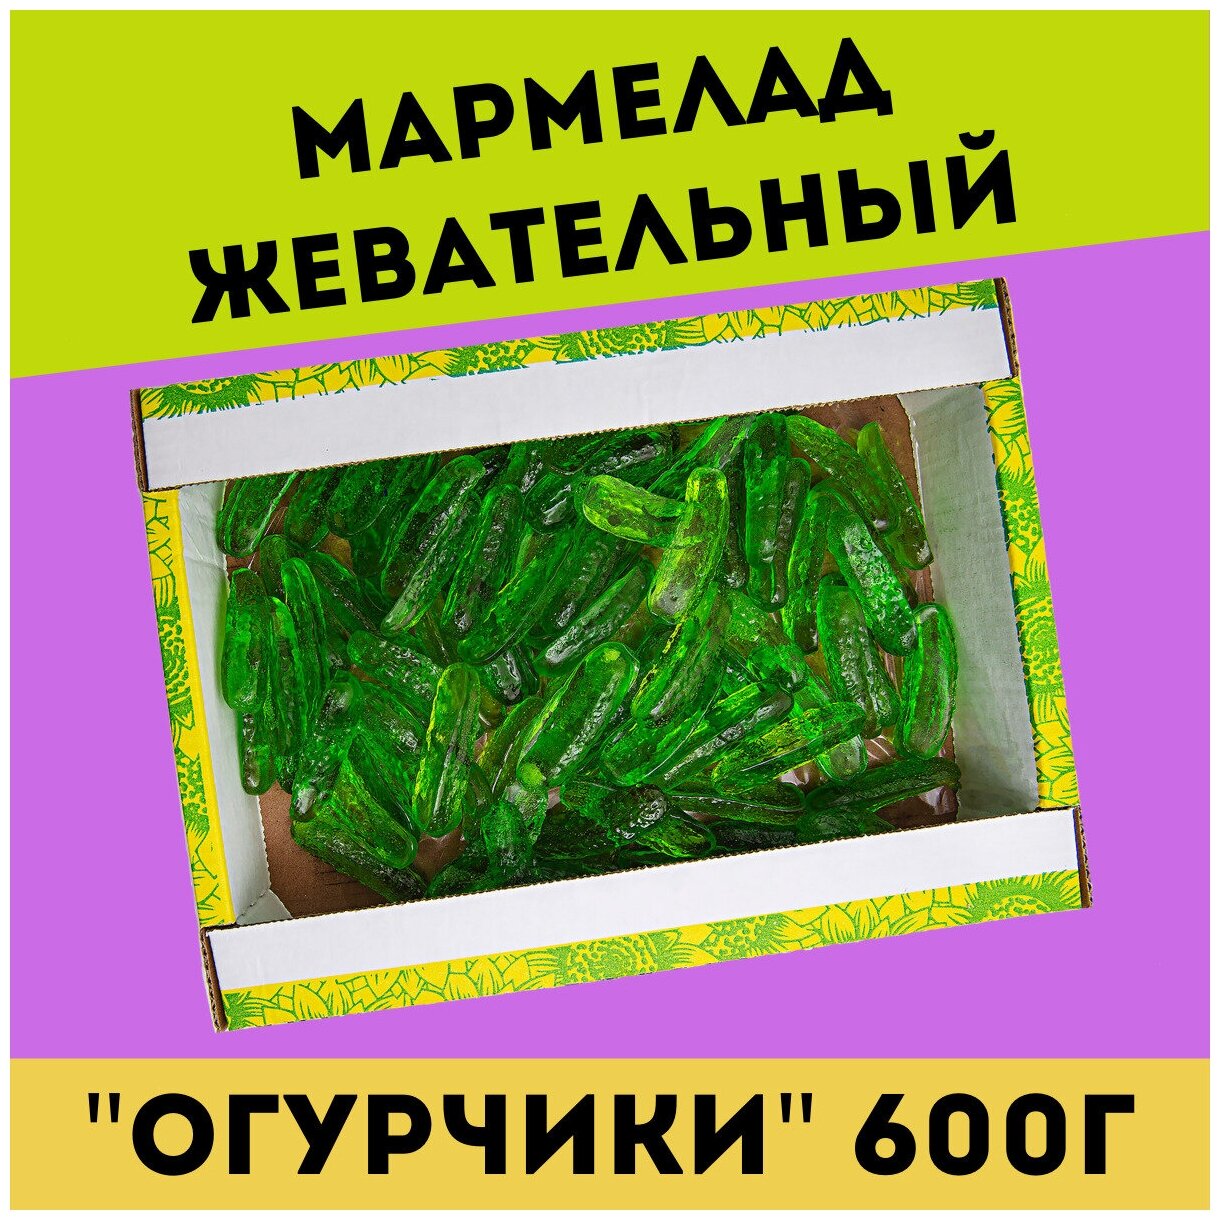 Жевательный натуральный мармелад огурчики, 600 гр / желейный / конфеты / Трофимов - фотография № 1